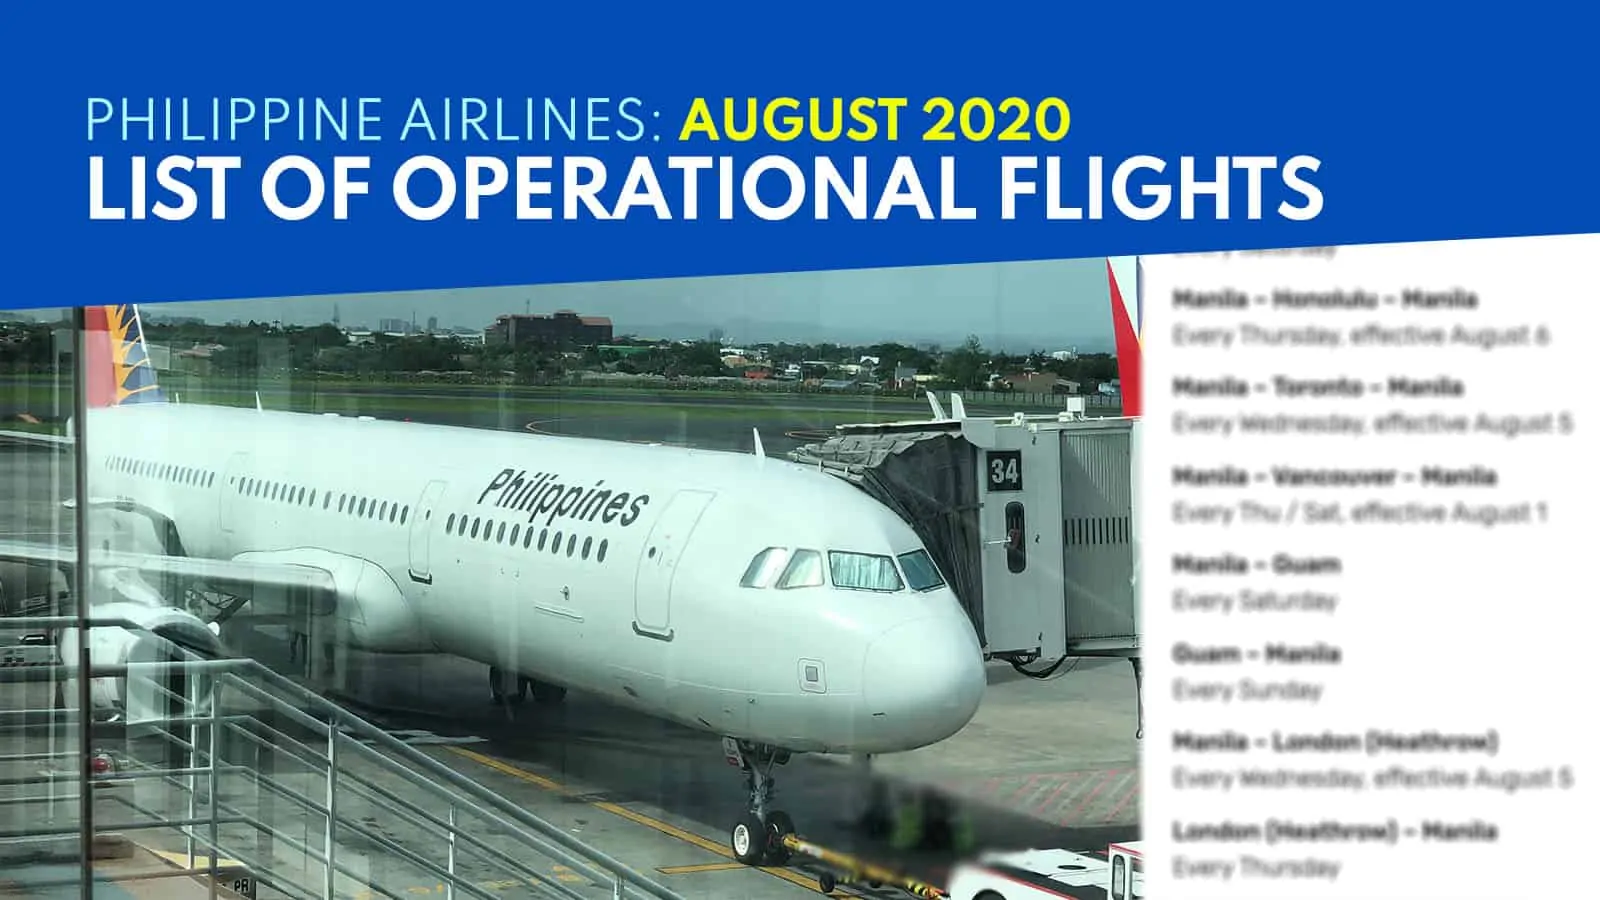 菲律宾航空公司:2020年8月19日开始运营的航班名单